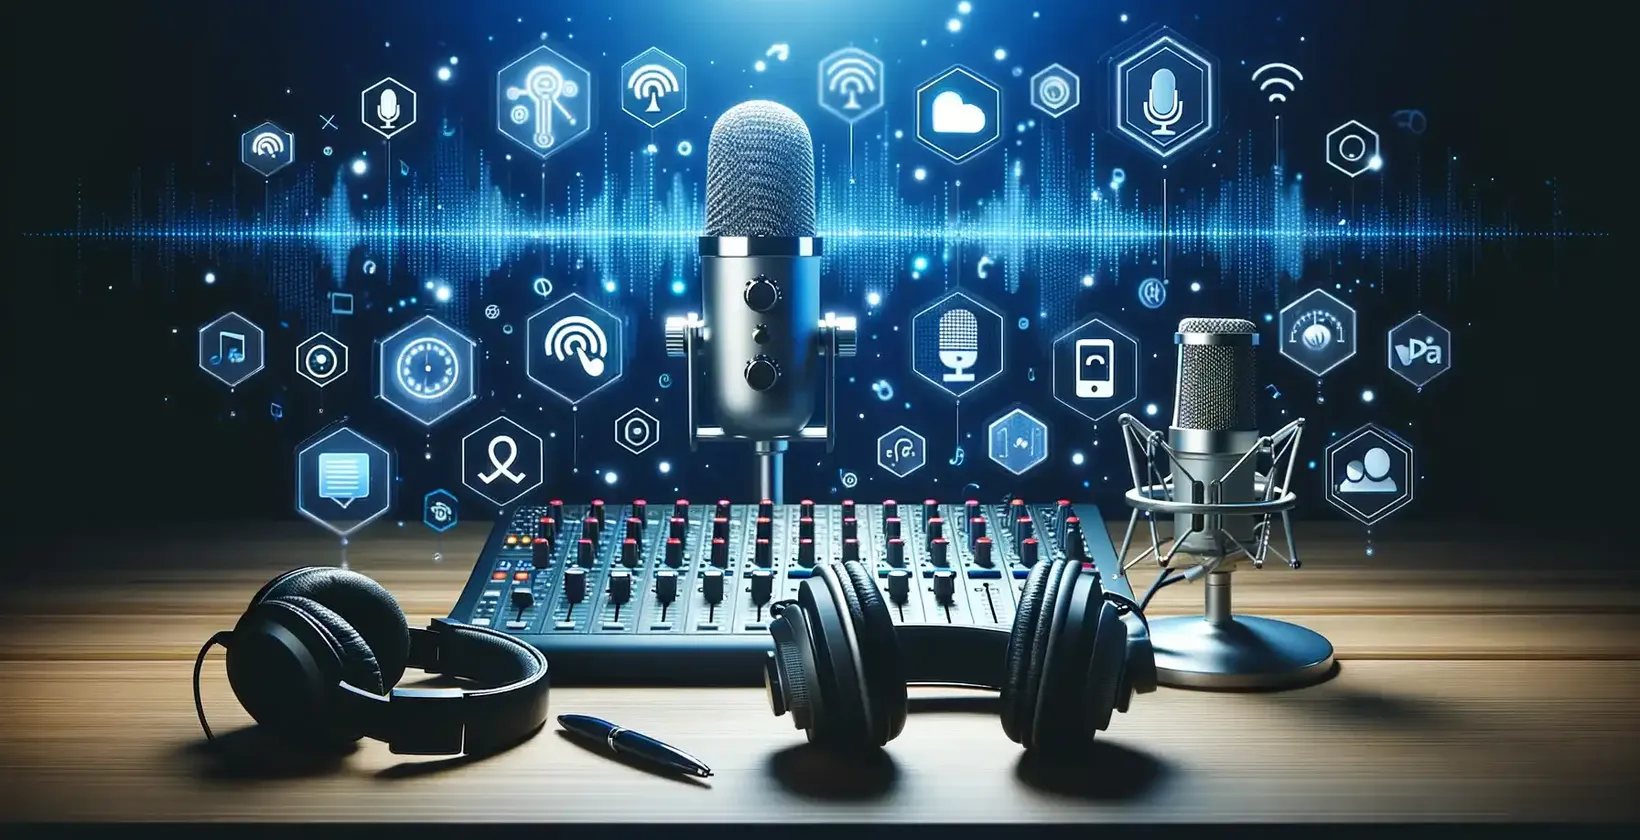 Podcasti seadistus koos mikrofoni, kõrvaklappide ja arvutiga Spotify podcasti transkriptsioonide jaoks